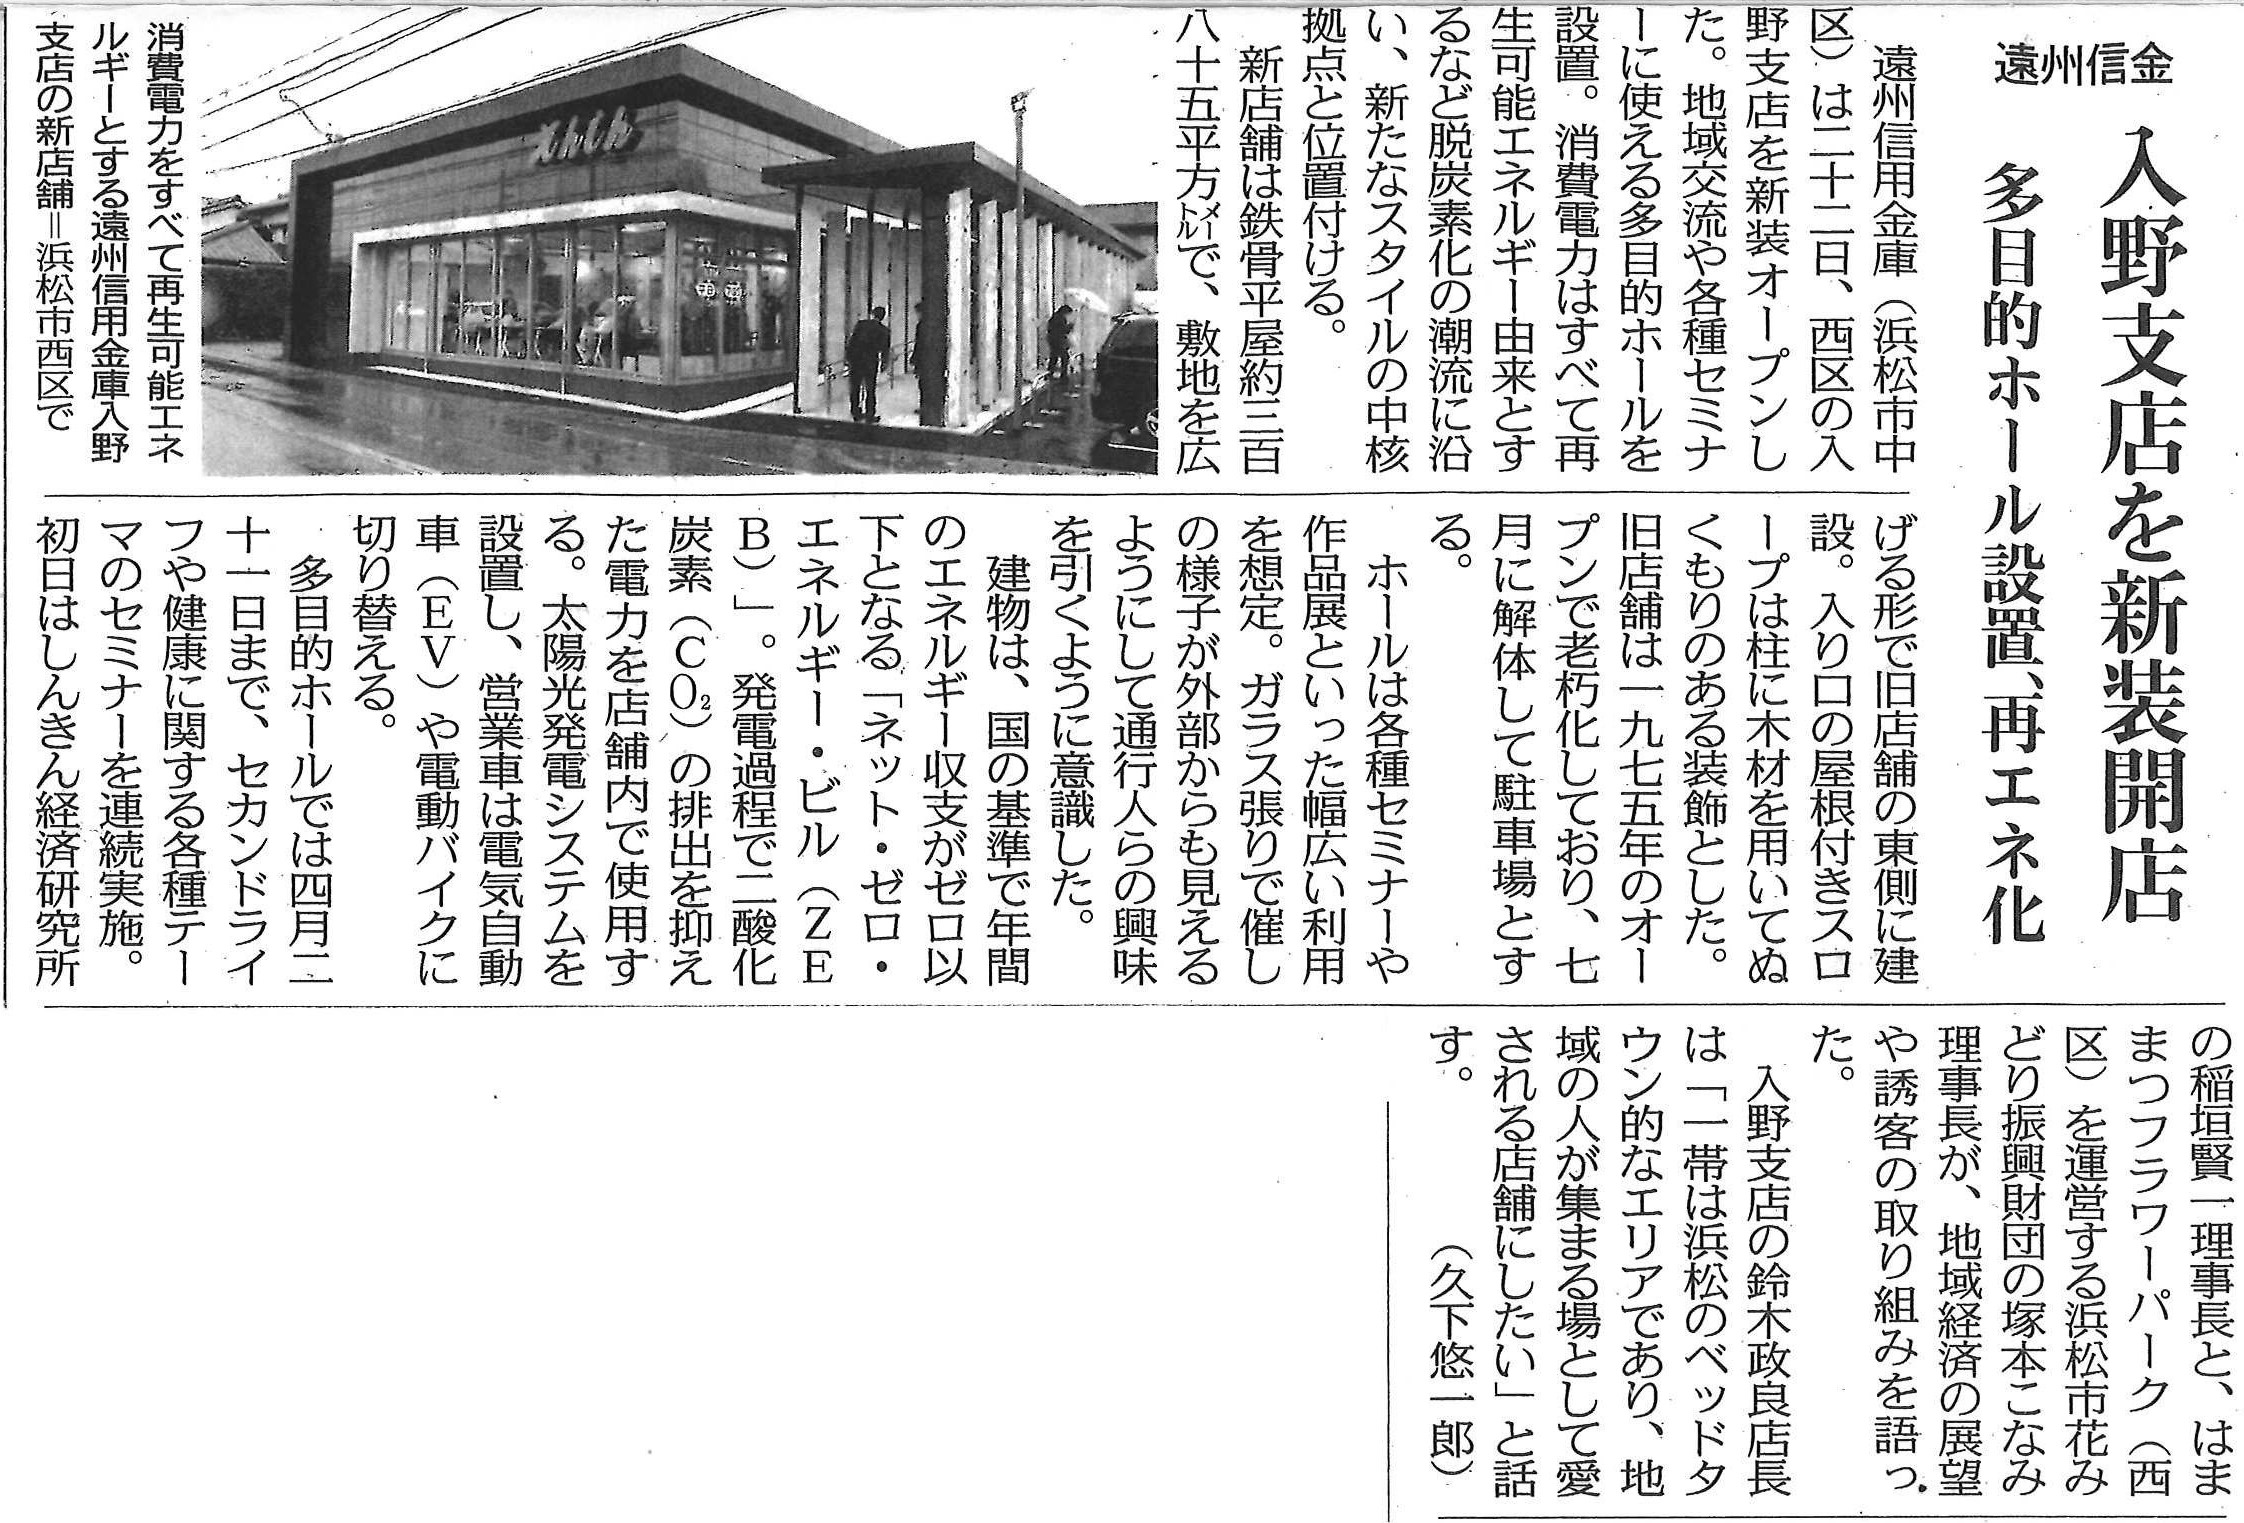 遠州信用金庫様入野支店が中日新聞に掲載されました。